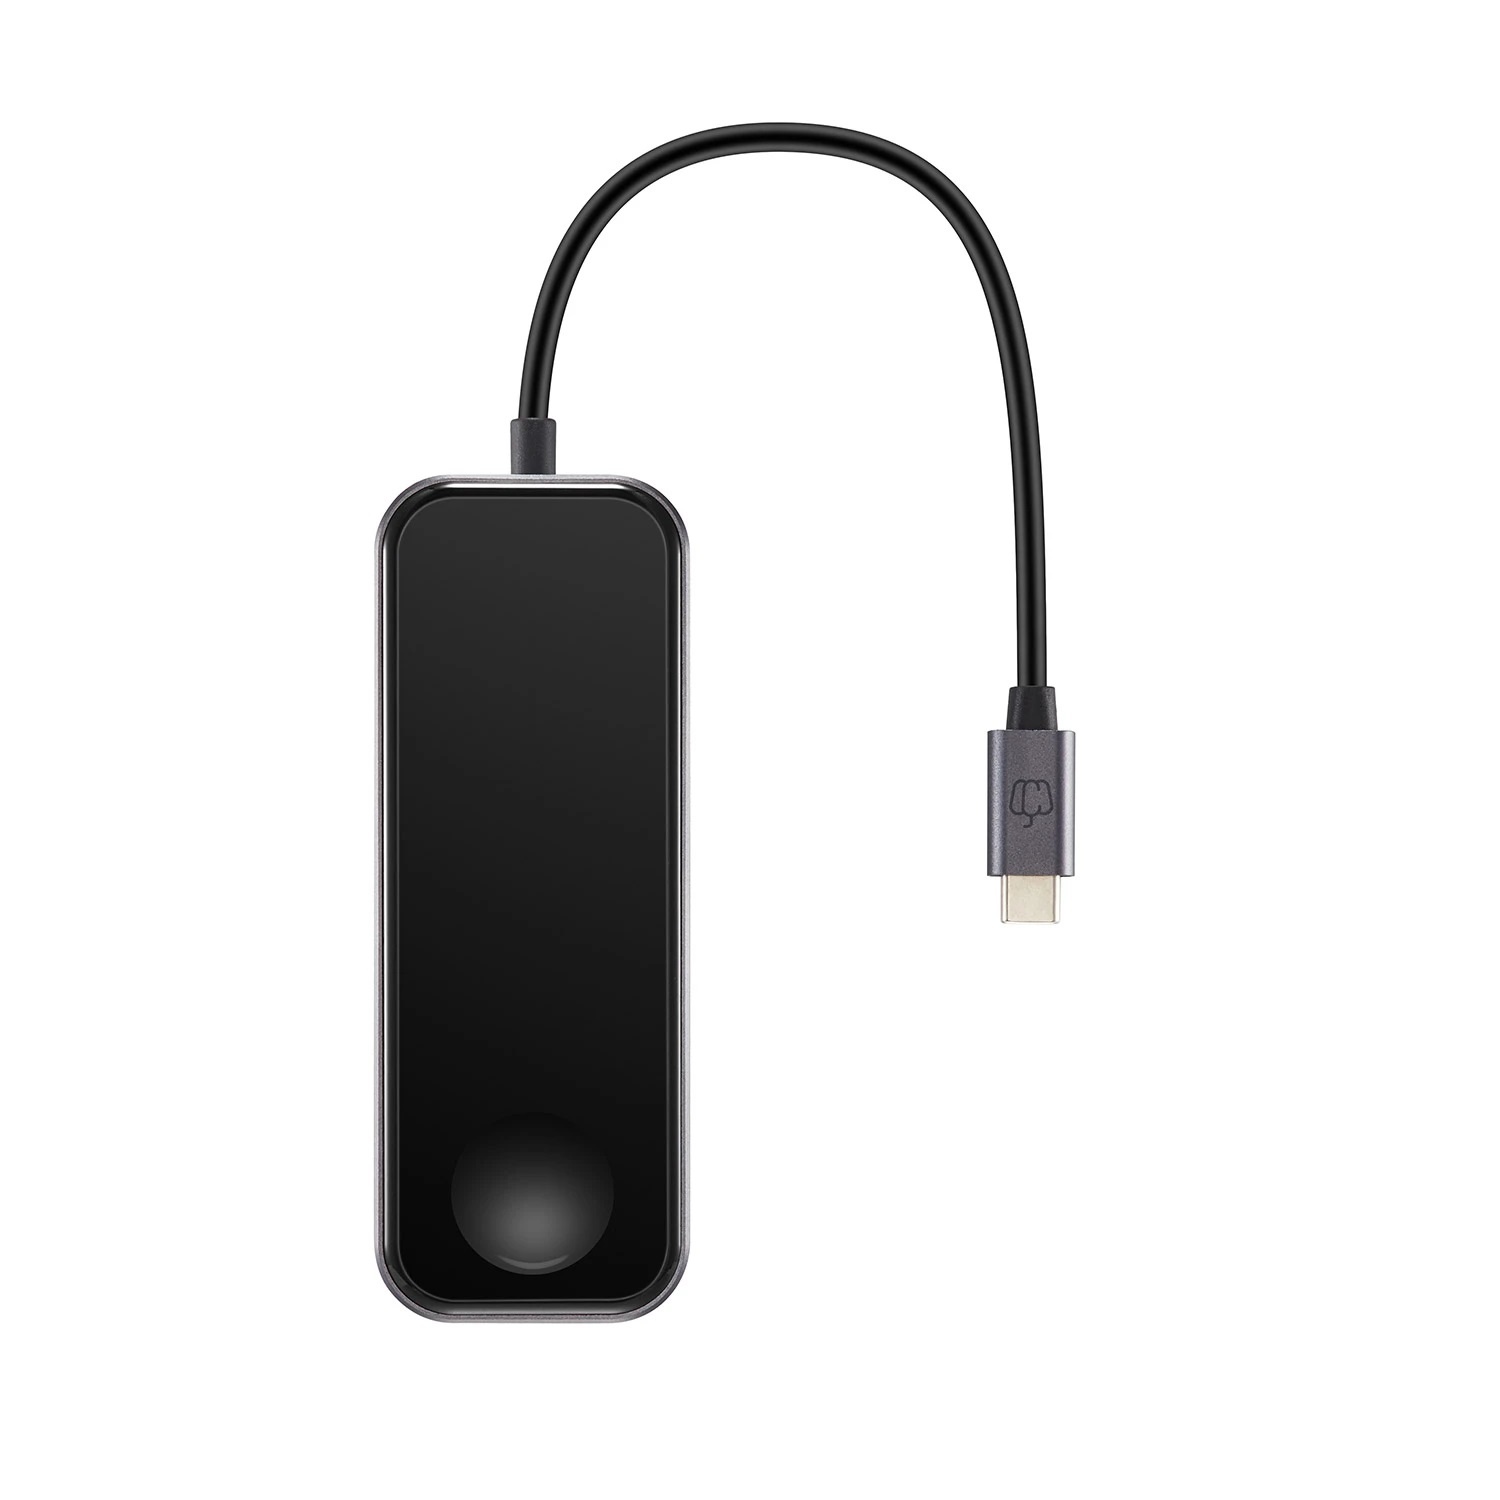 Celsius inflatie Bevestigen aan TCH-W5 is een USB-C 3.1 naar USB 3.0-hub met een draadloze oplader voor de  Apple Watch - Officiële geautoriseerde EU Distribiteur van PEPPER JOBS  producten en Digital Signage Kiosk spelers X28-i en